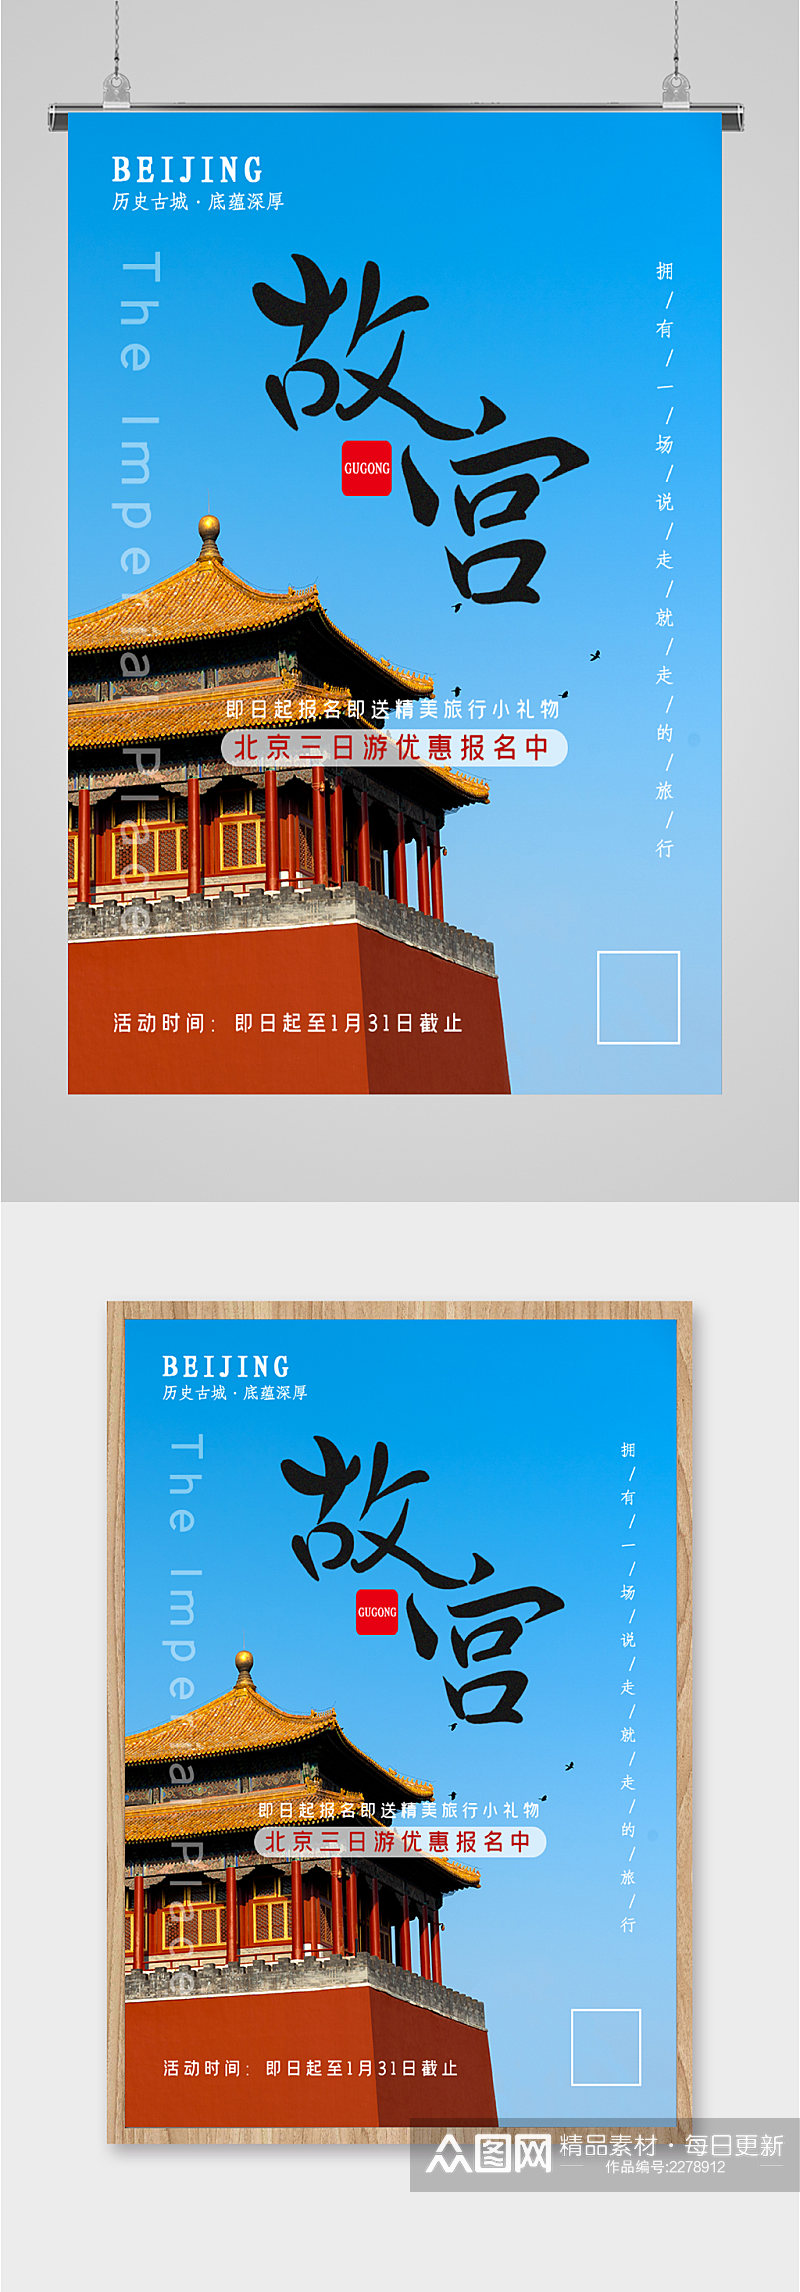 故宫北京旅游优惠海报素材